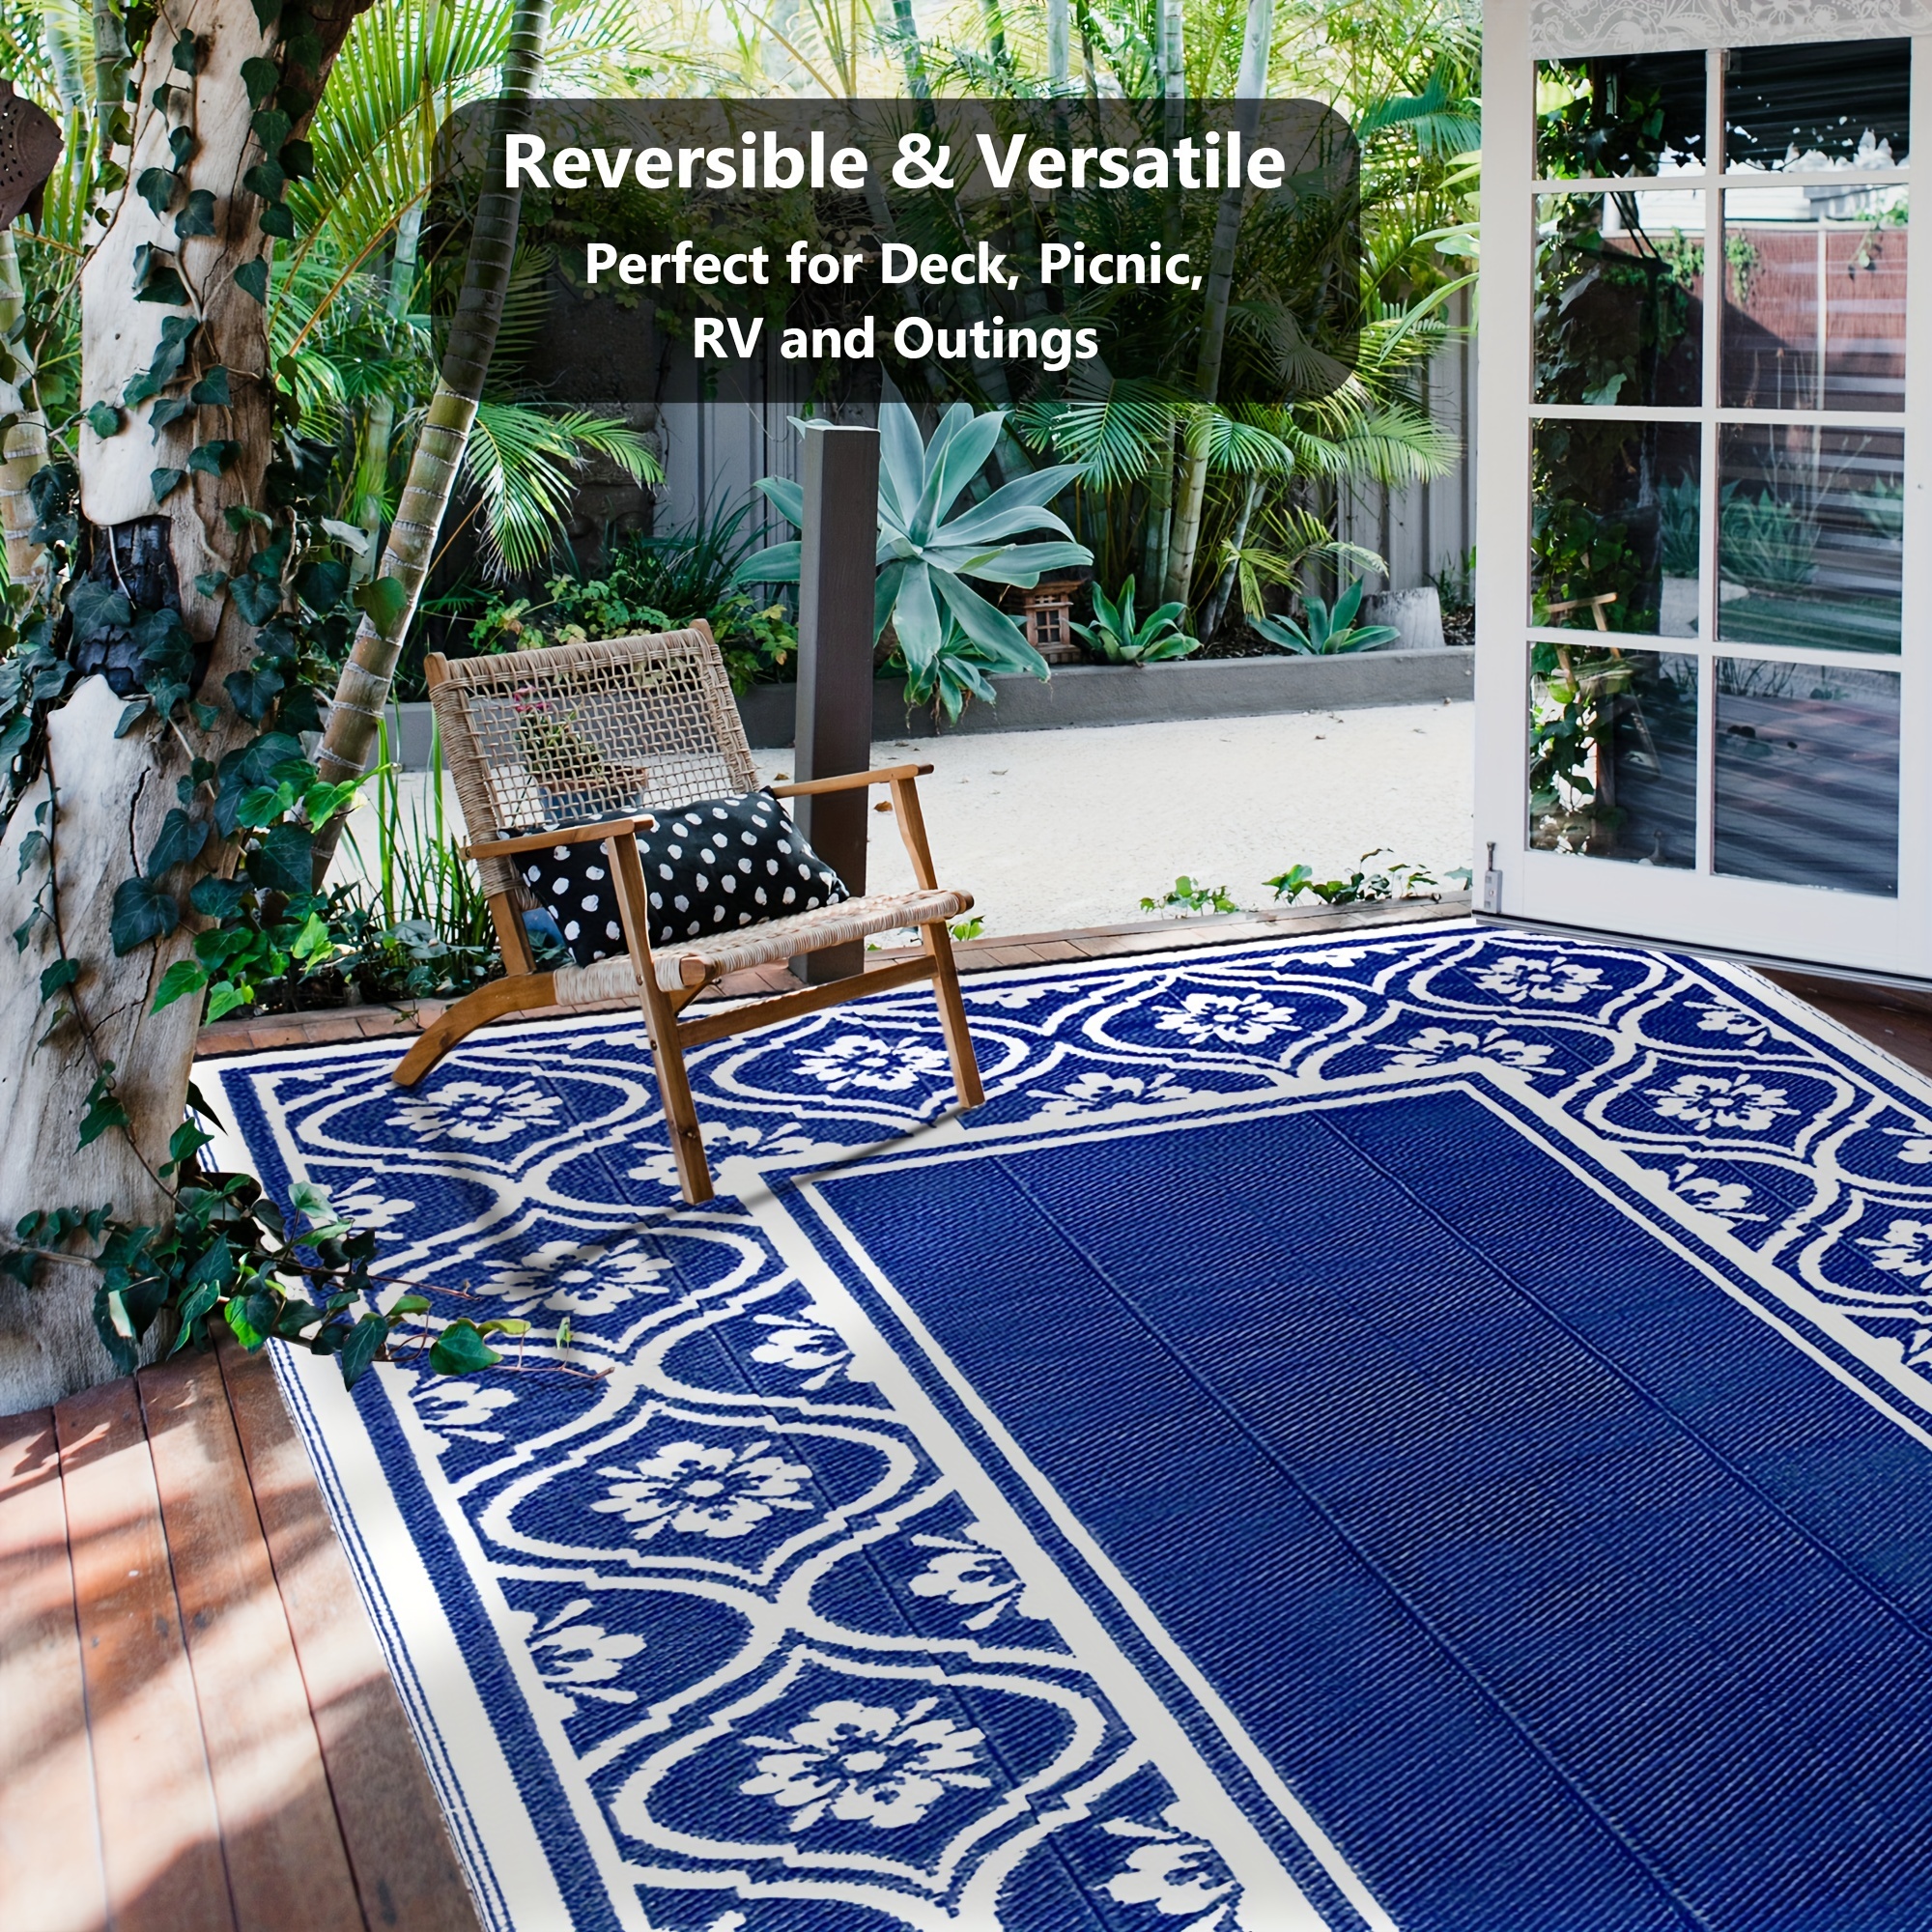 MontVoo-Outdoor Rug Carpet Waterproof 9x12 ft Reversible Patio RV